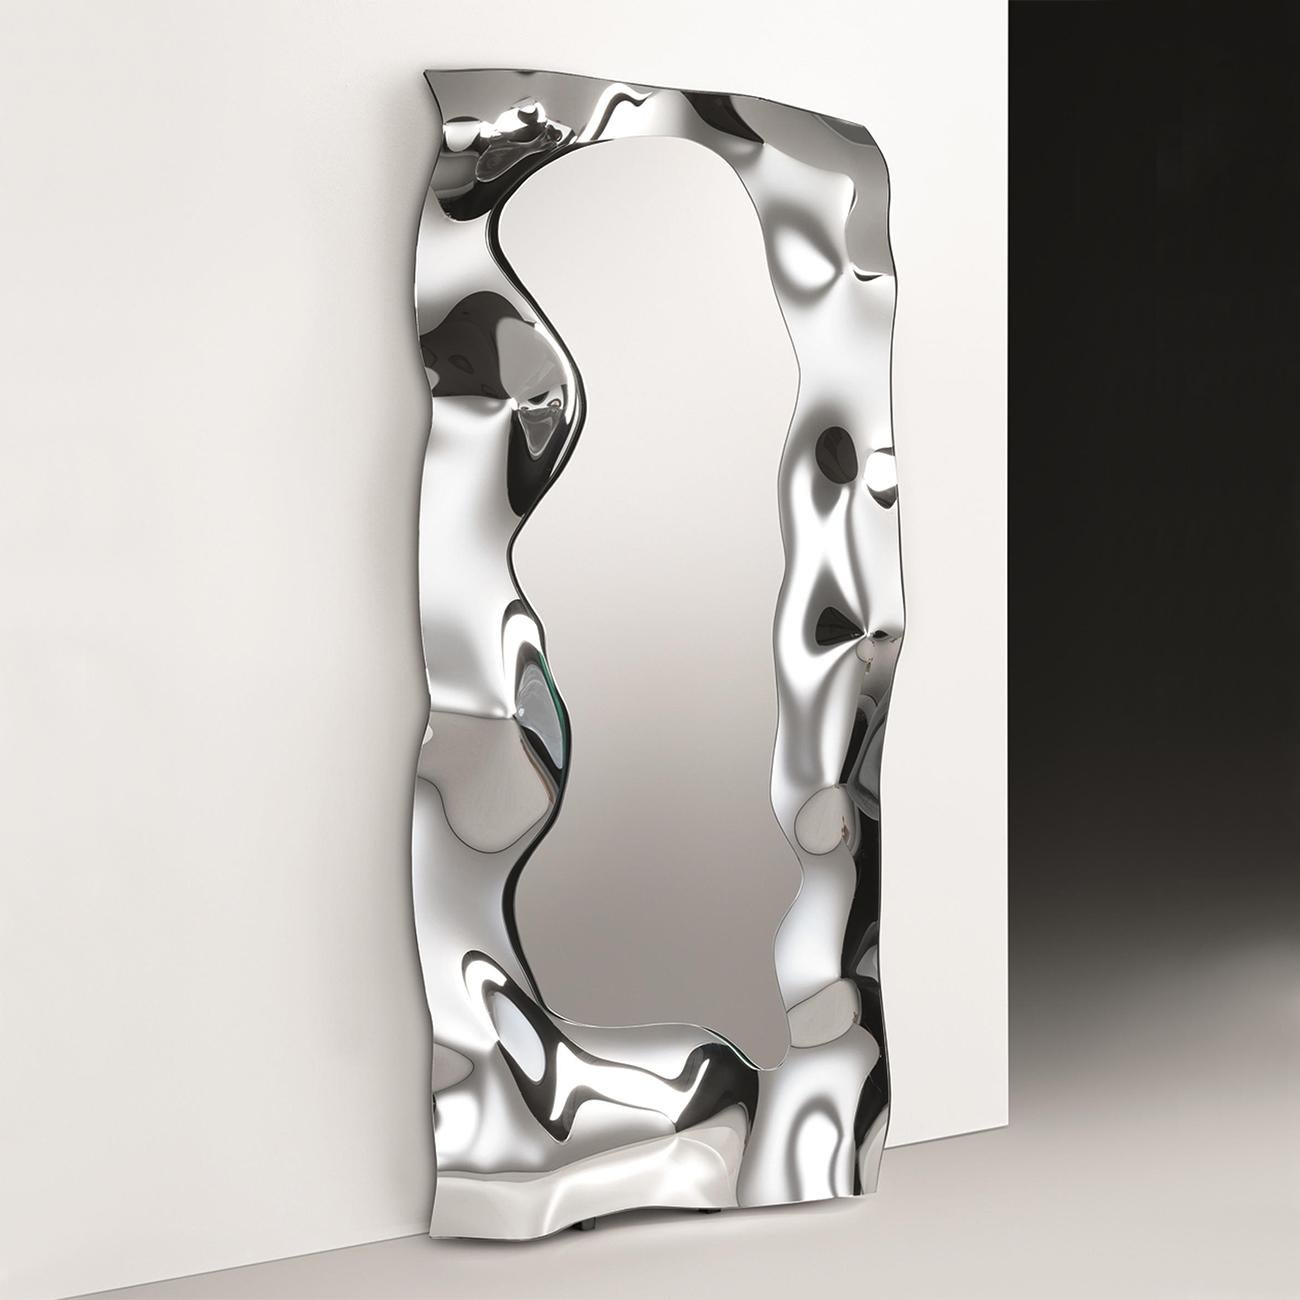 Miroir plein en verre miroir fondu à haute température,
6mm d'épaisseur. Avec un cadre en métal poli. Retour du miroir
finition argentée.